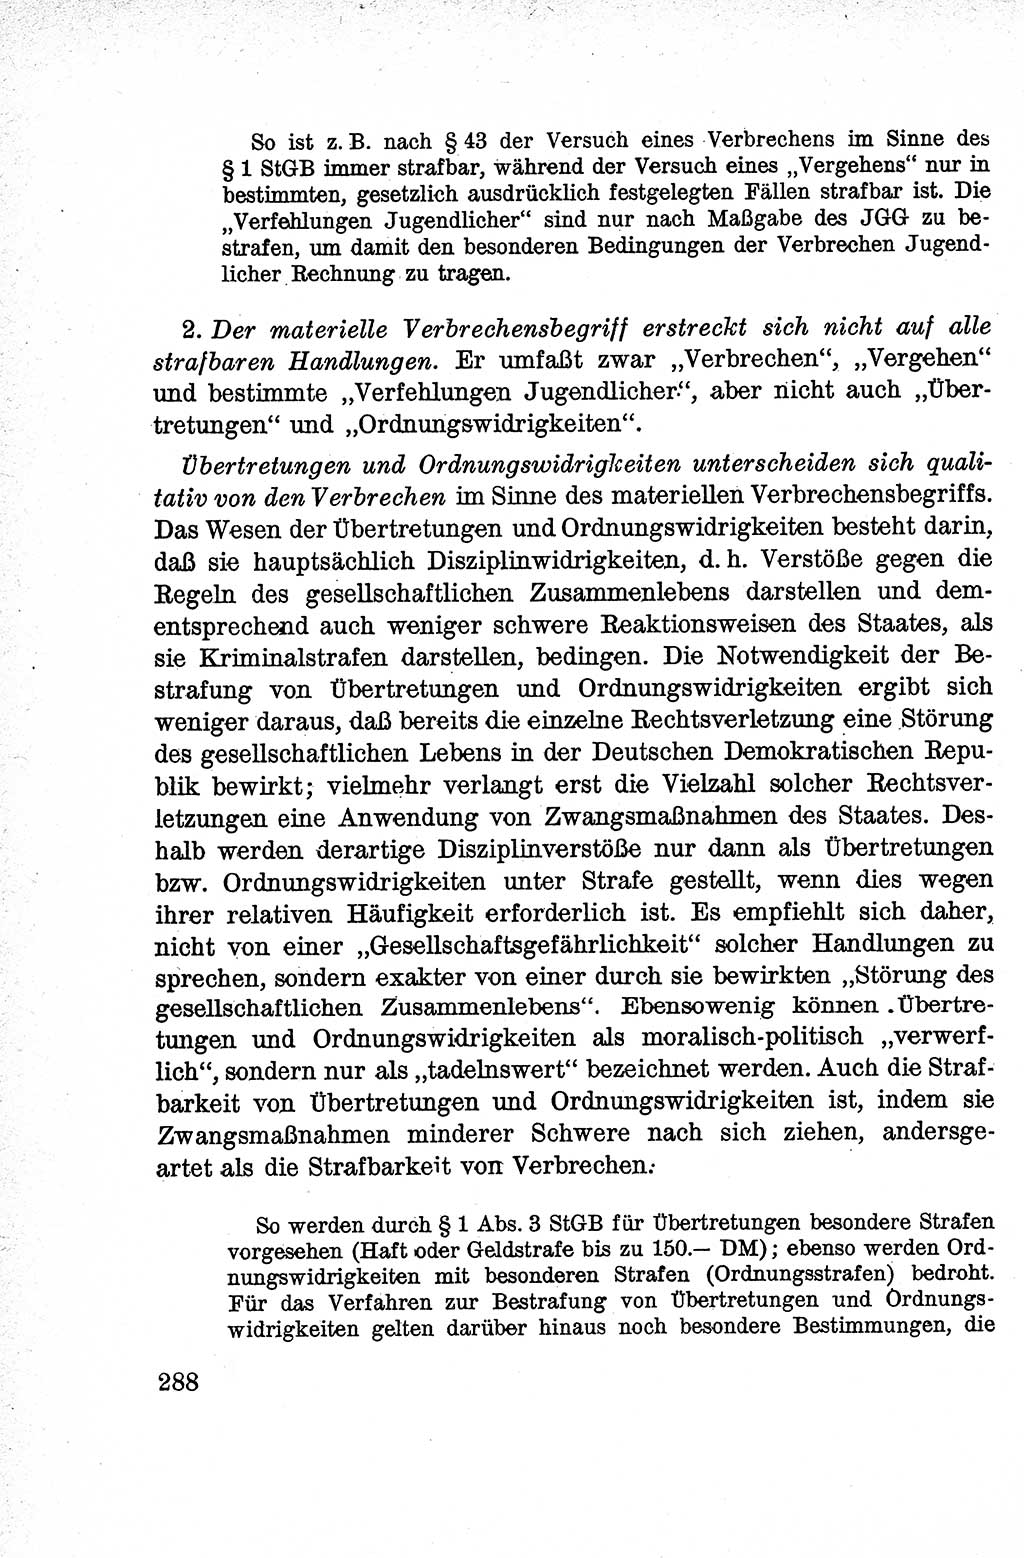 Lehrbuch des Strafrechts der Deutschen Demokratischen Republik (DDR), Allgemeiner Teil 1959, Seite 288 (Lb. Strafr. DDR AT 1959, S. 288)